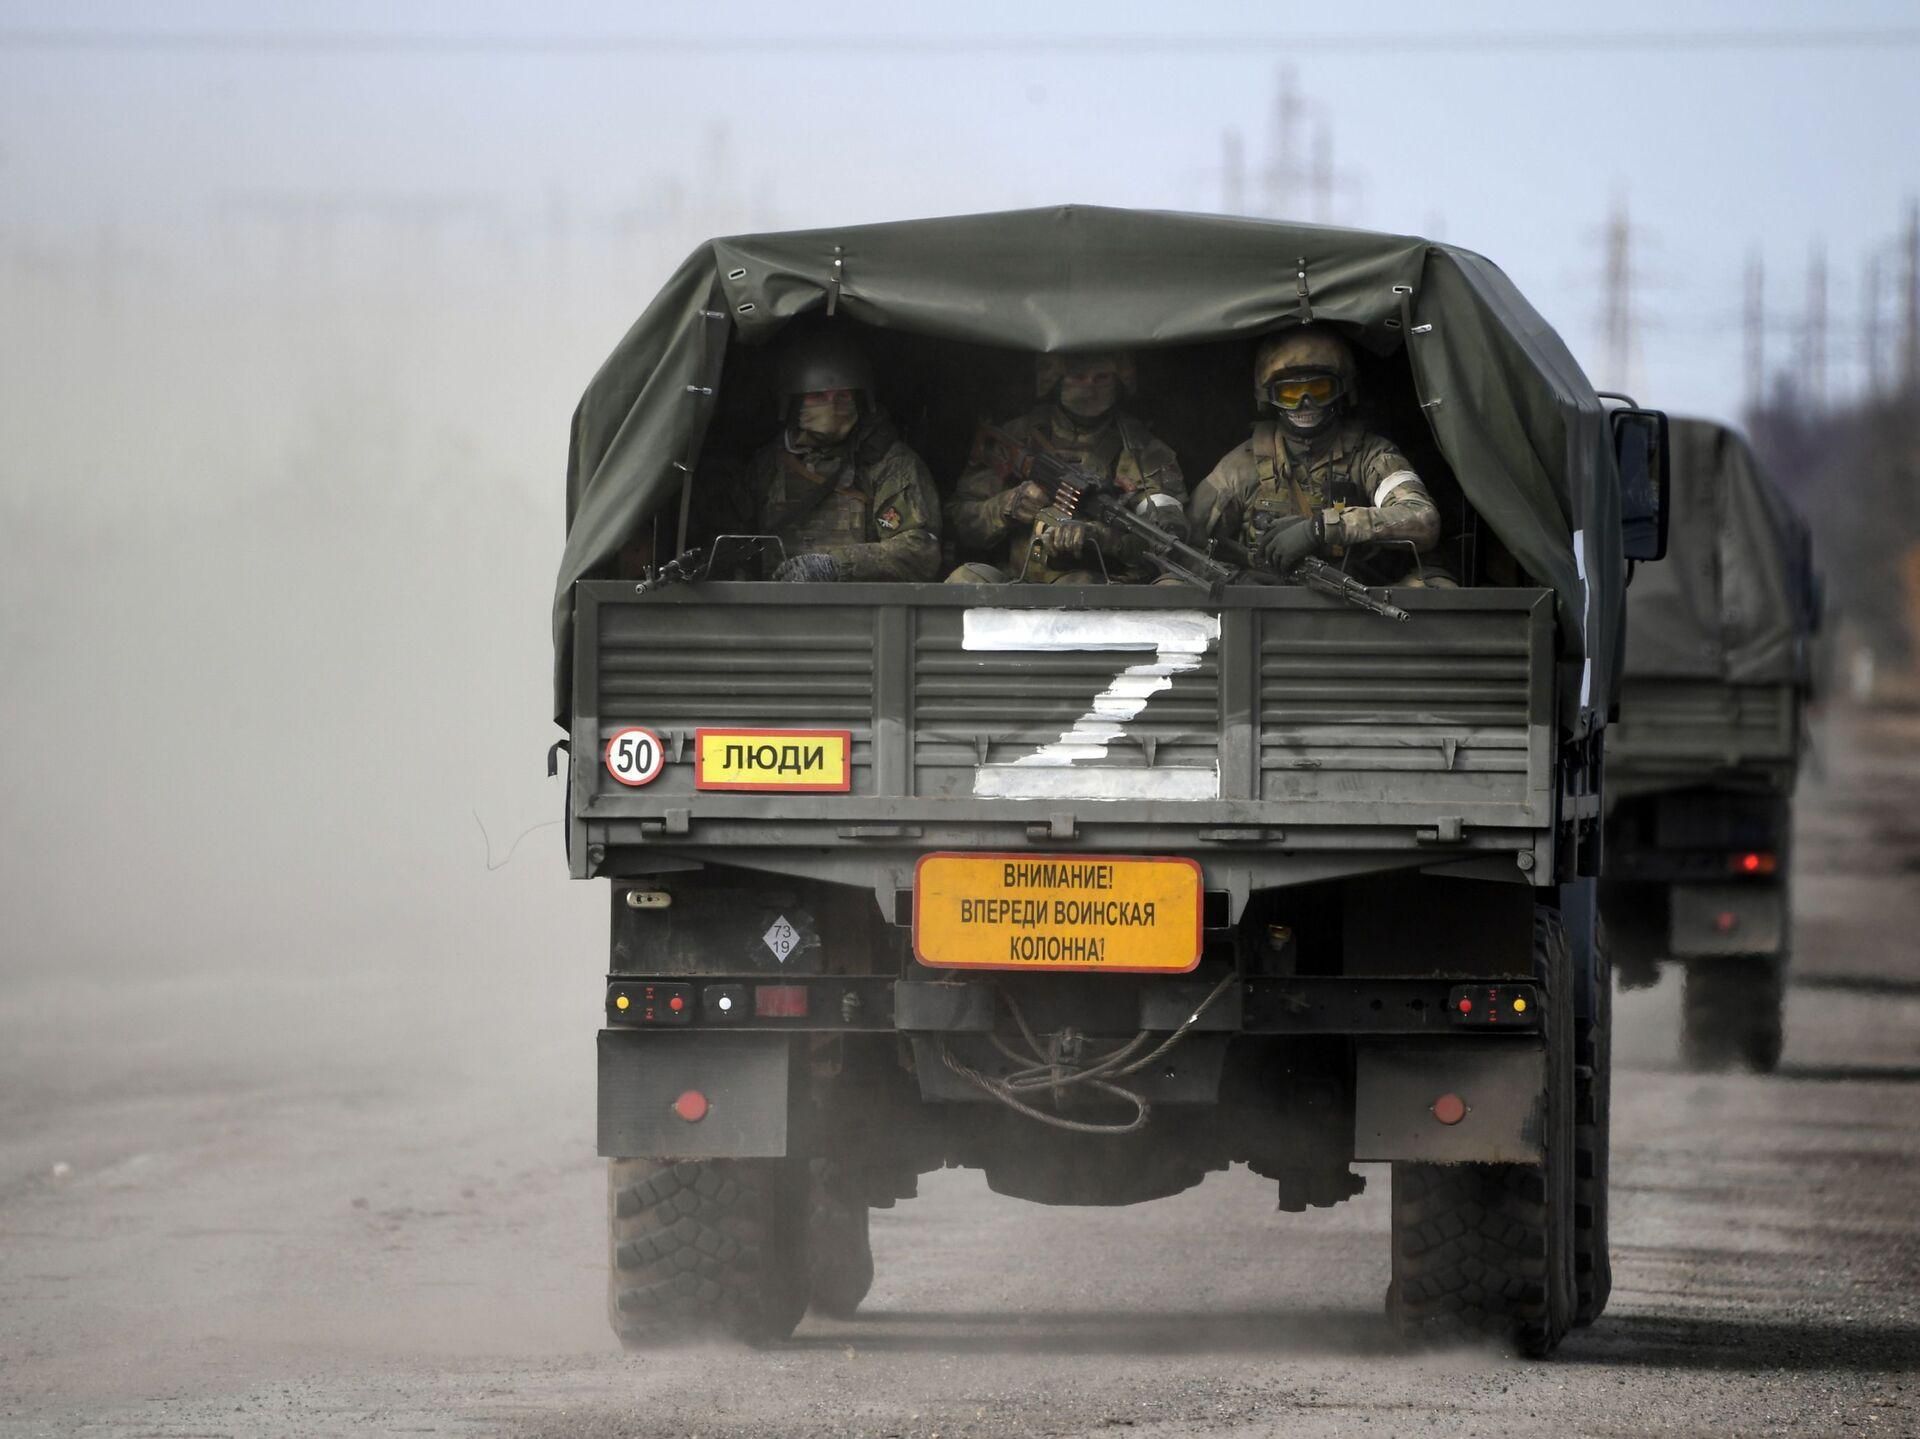 Понад 100 бійців печензької бригади відмовилися воювати проти України, – журналіст - 24 Канал